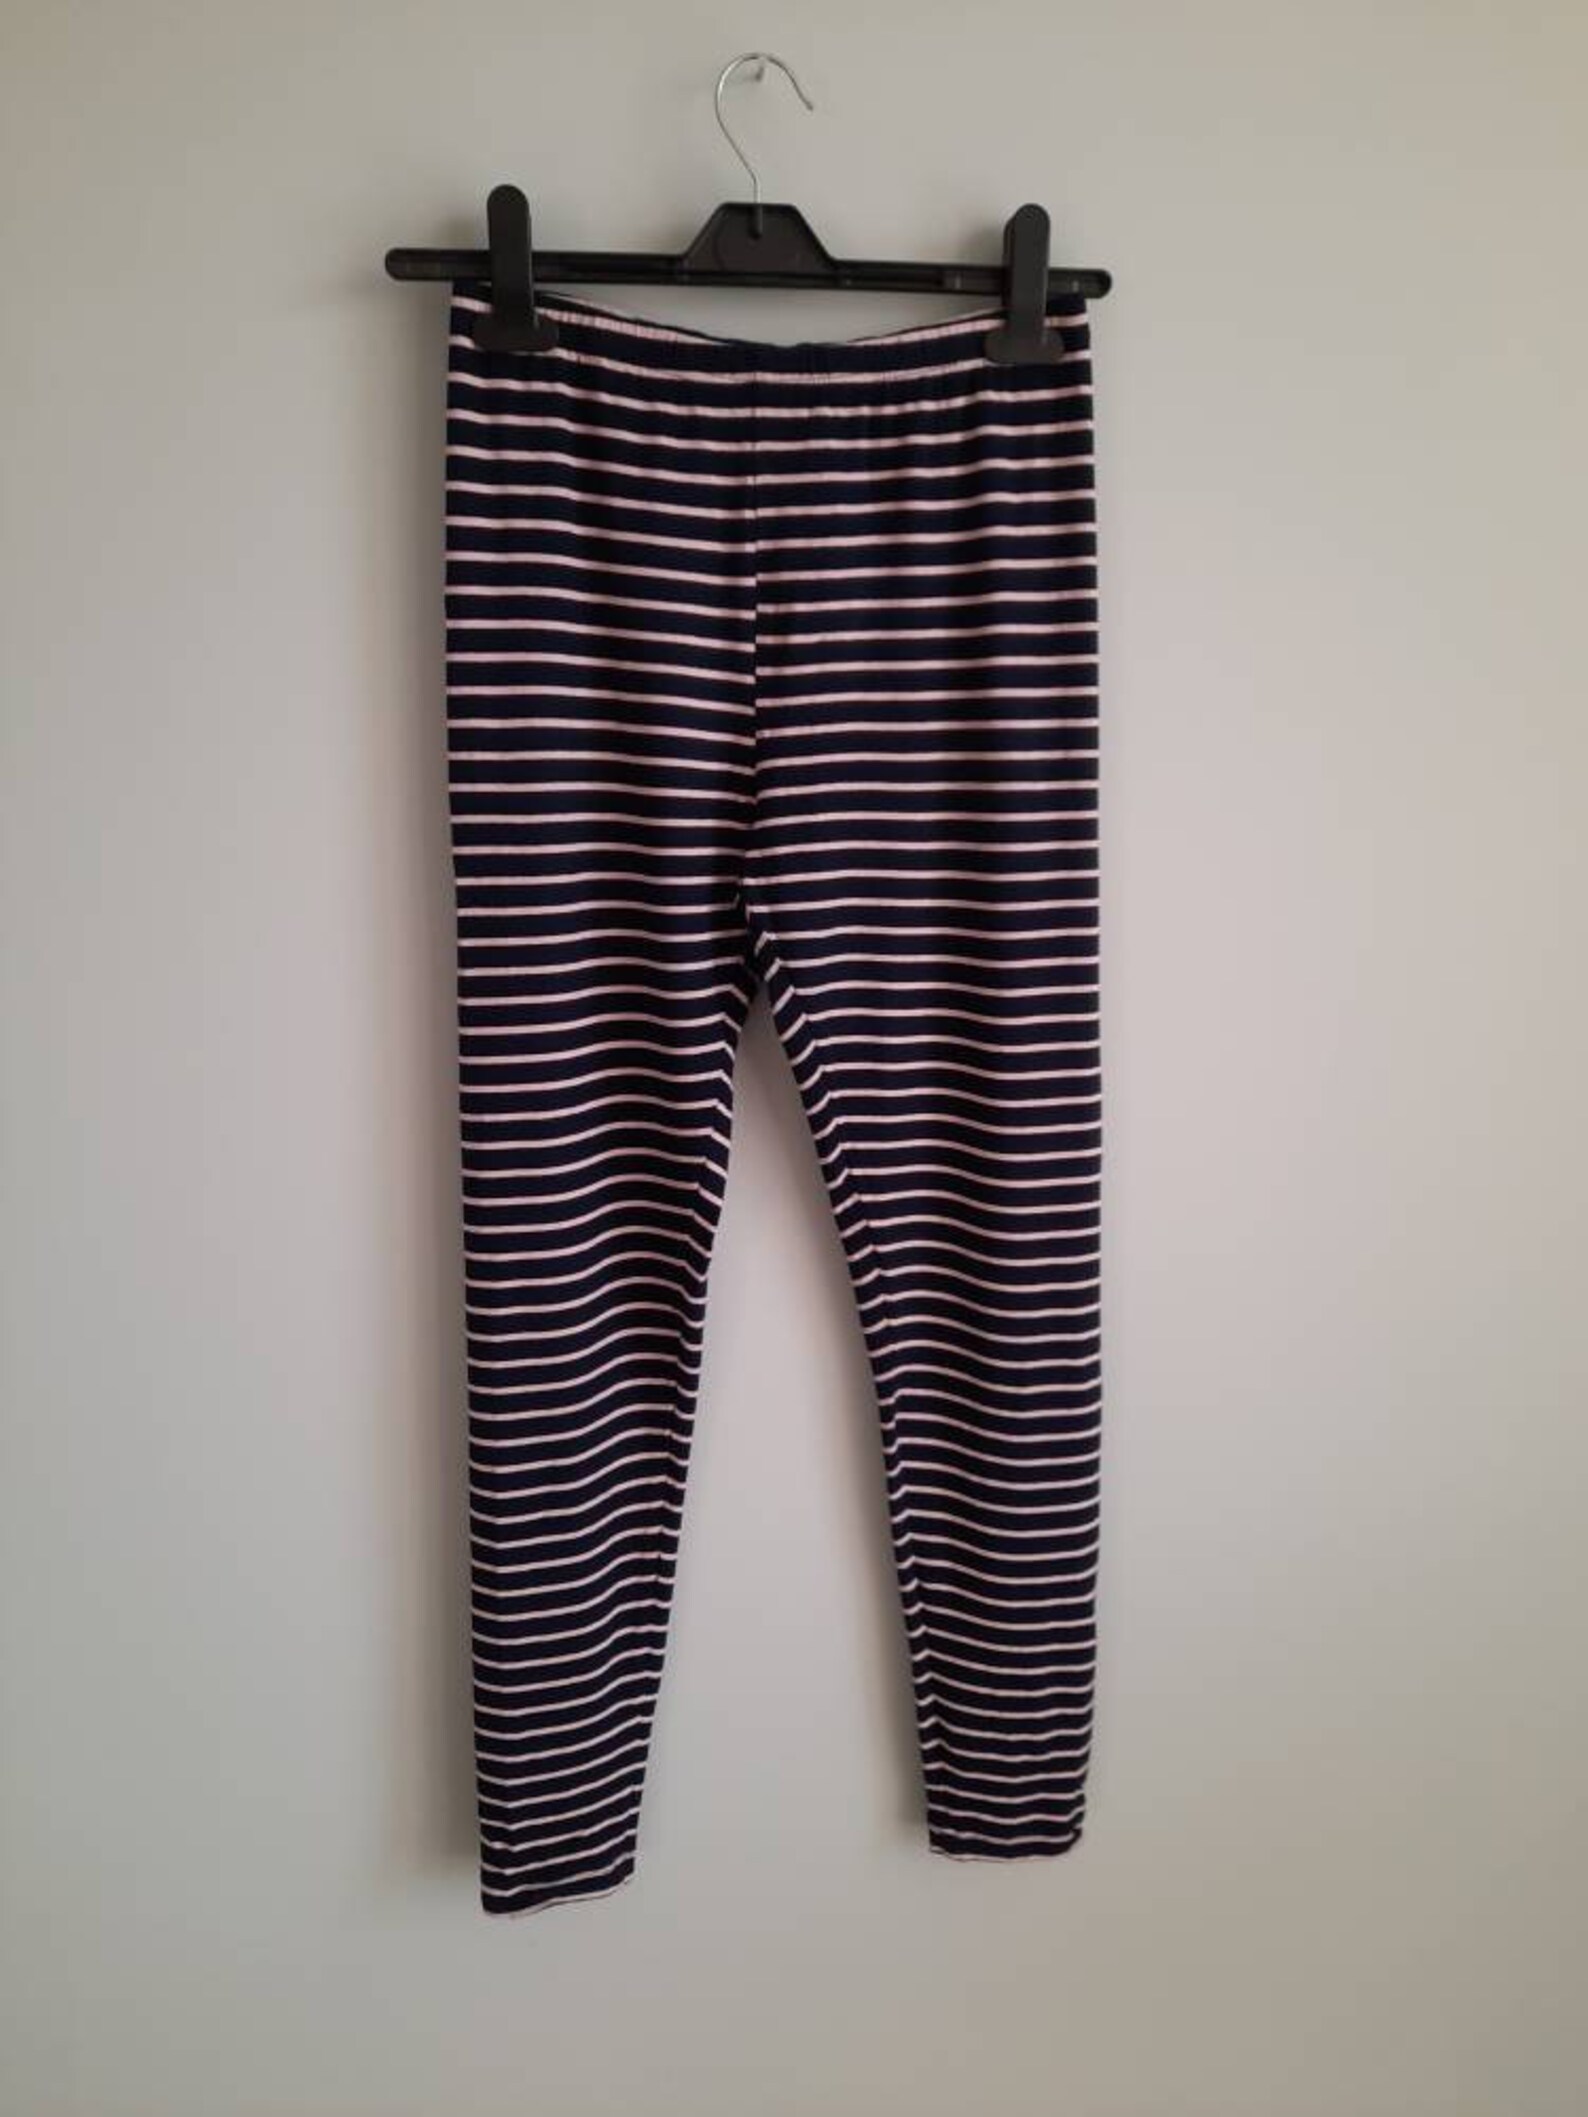 Marimekko Striped Leggings Yoga Pants Blue Pink Pants - Etsy Australia